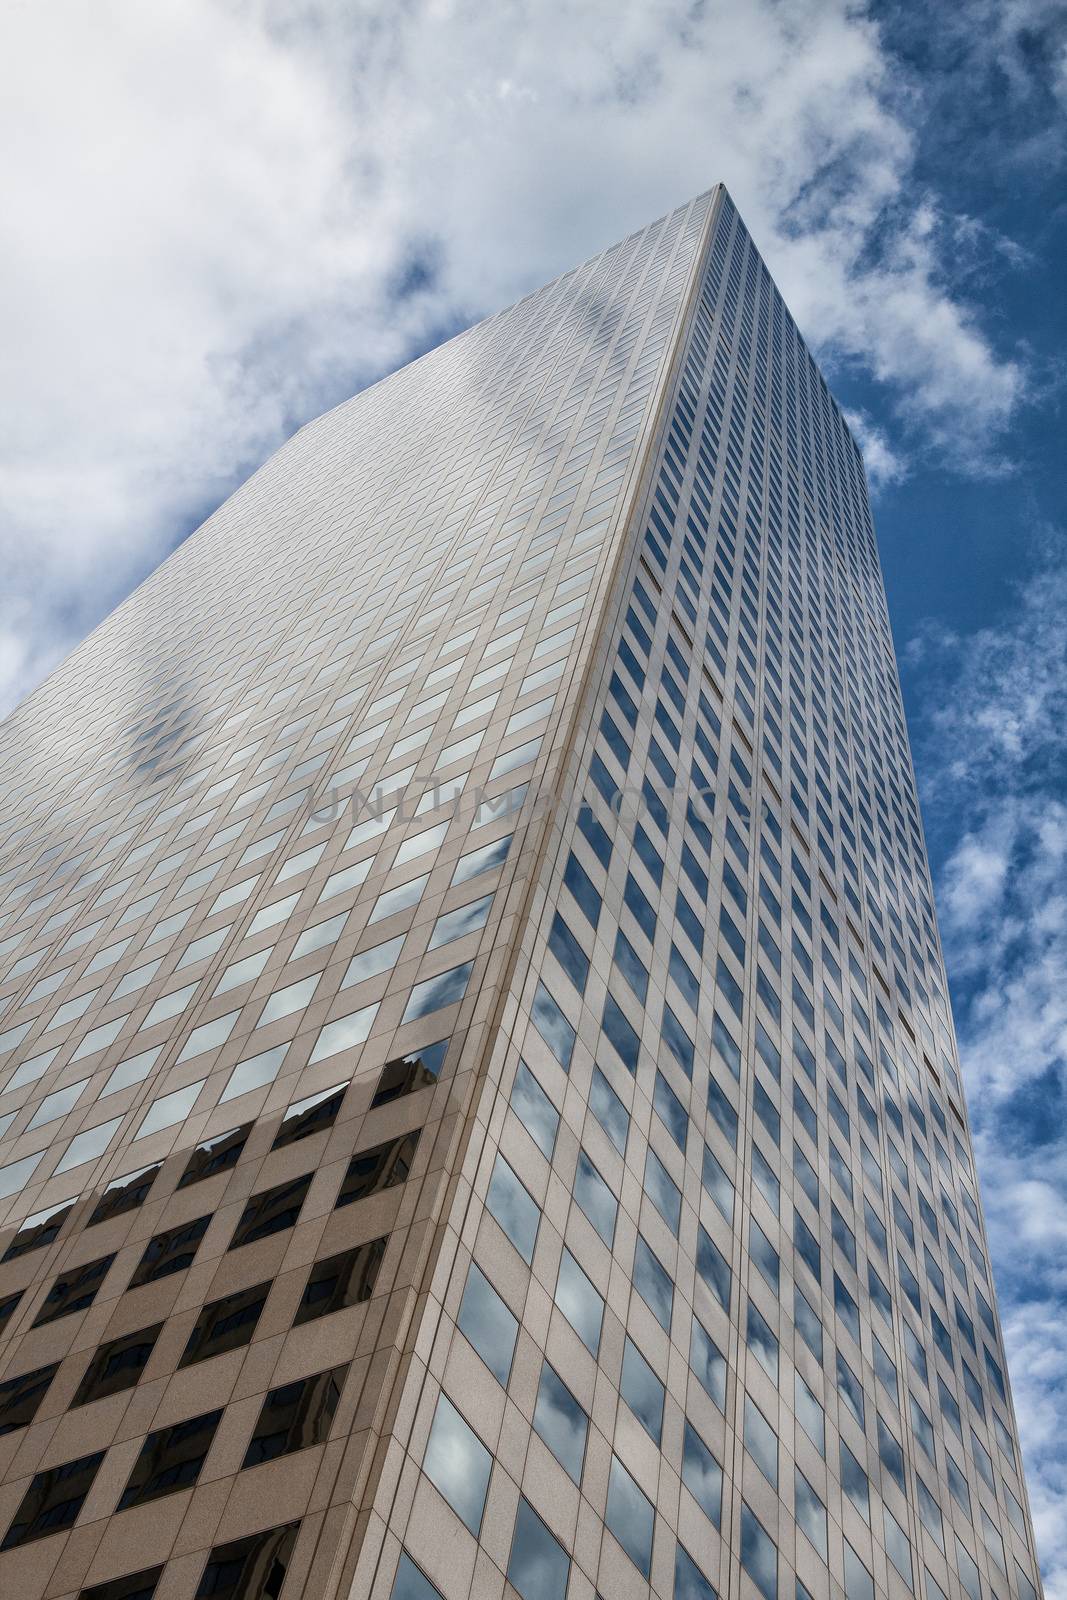 Looking up - skyscraper in Denver by CaptureLight